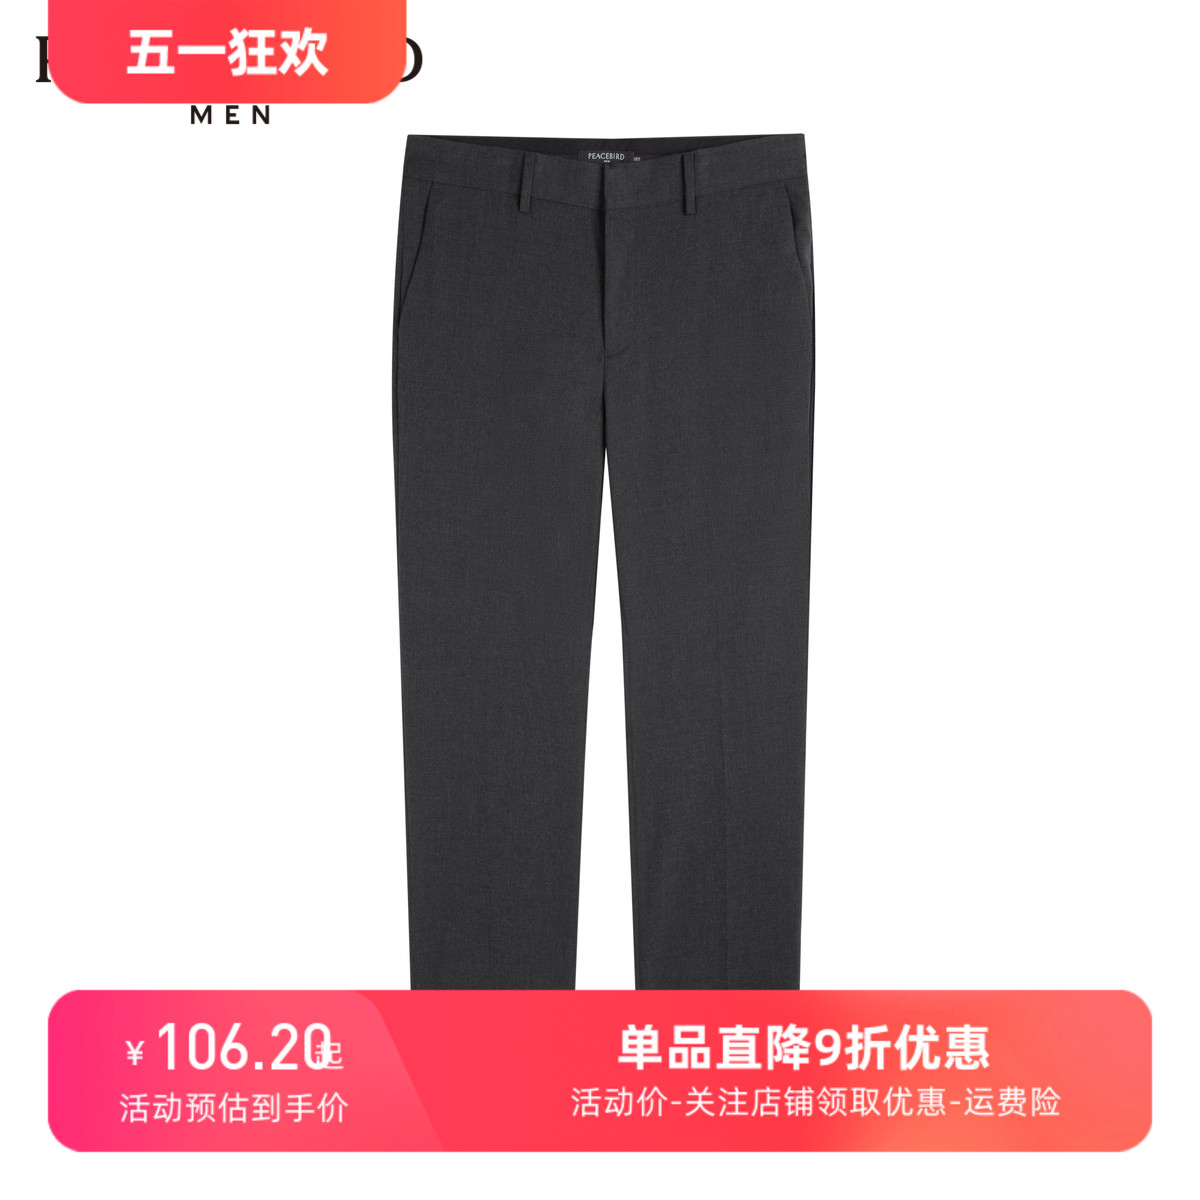 男B1GBC1323 太平鸟男装 商务时尚 休闲裤 商场同款